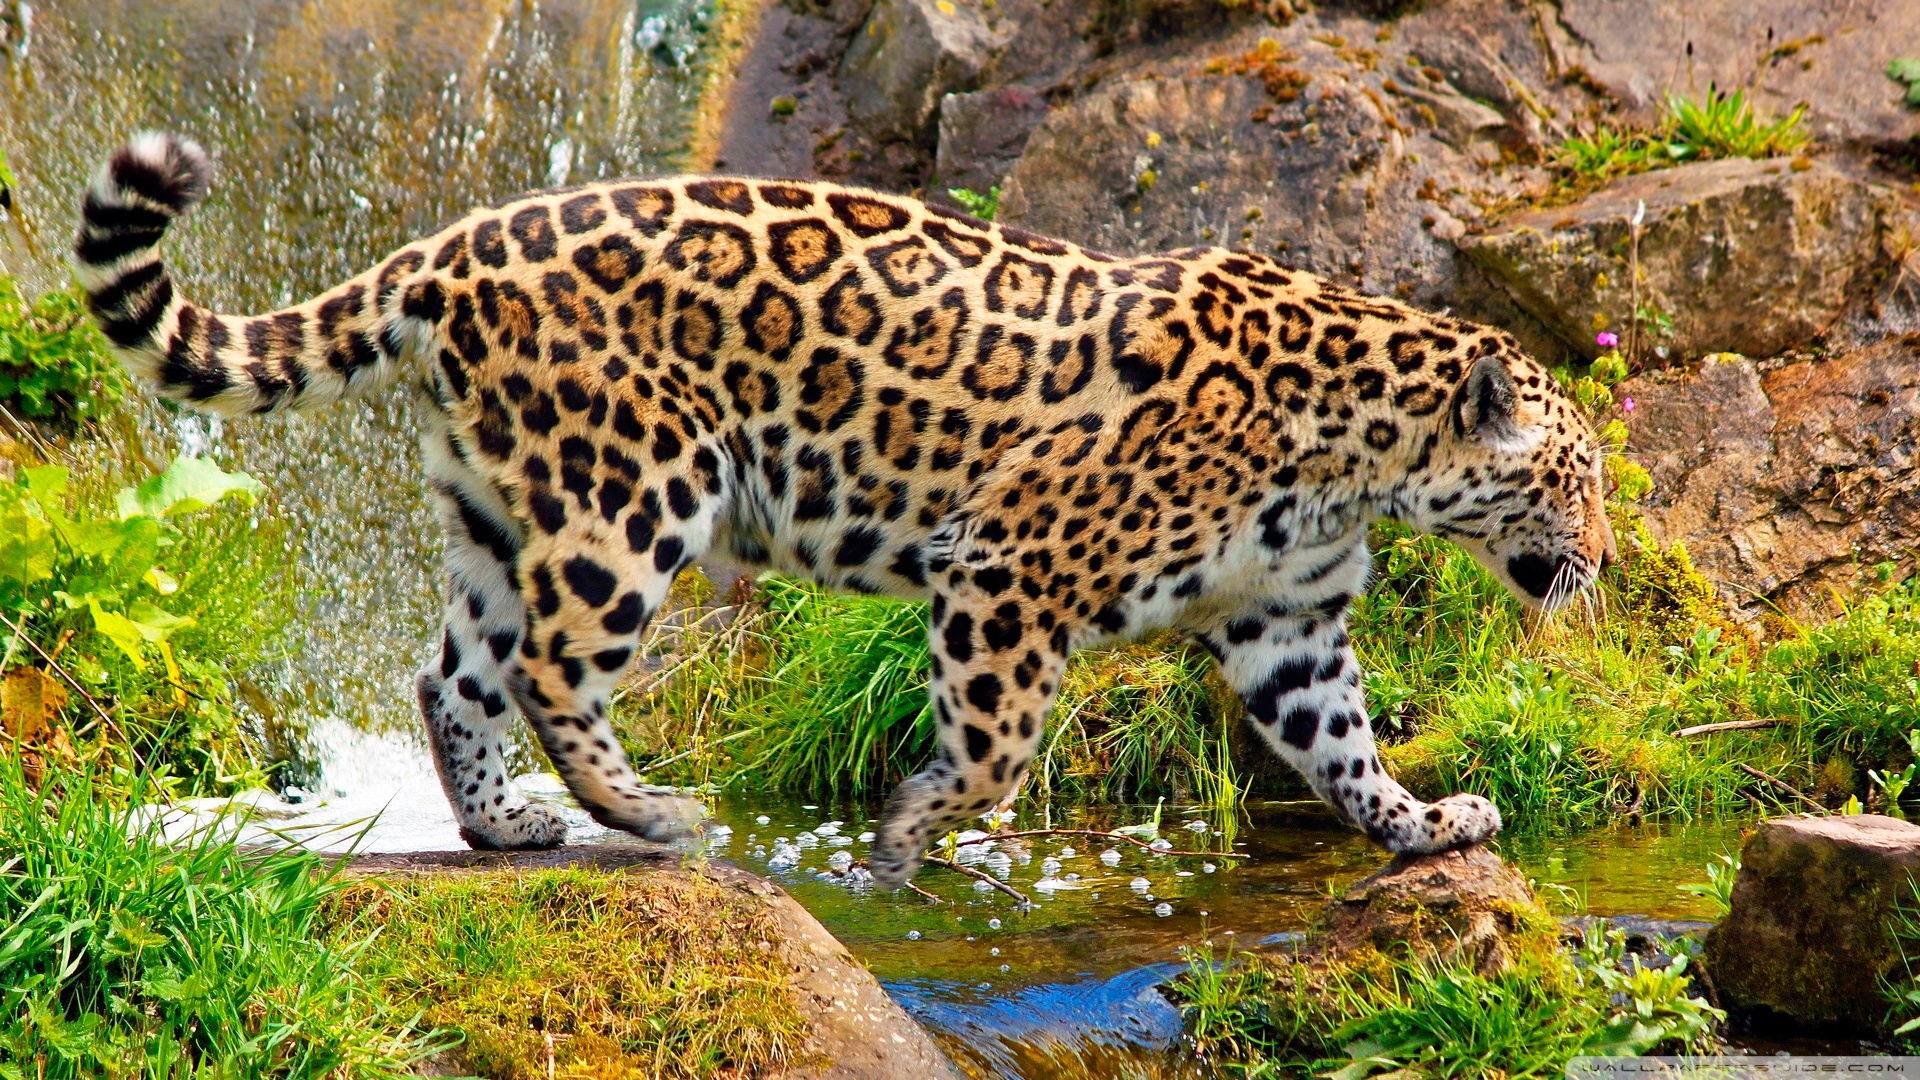 General 1920x1080 jaguars animals big cats mammals plants